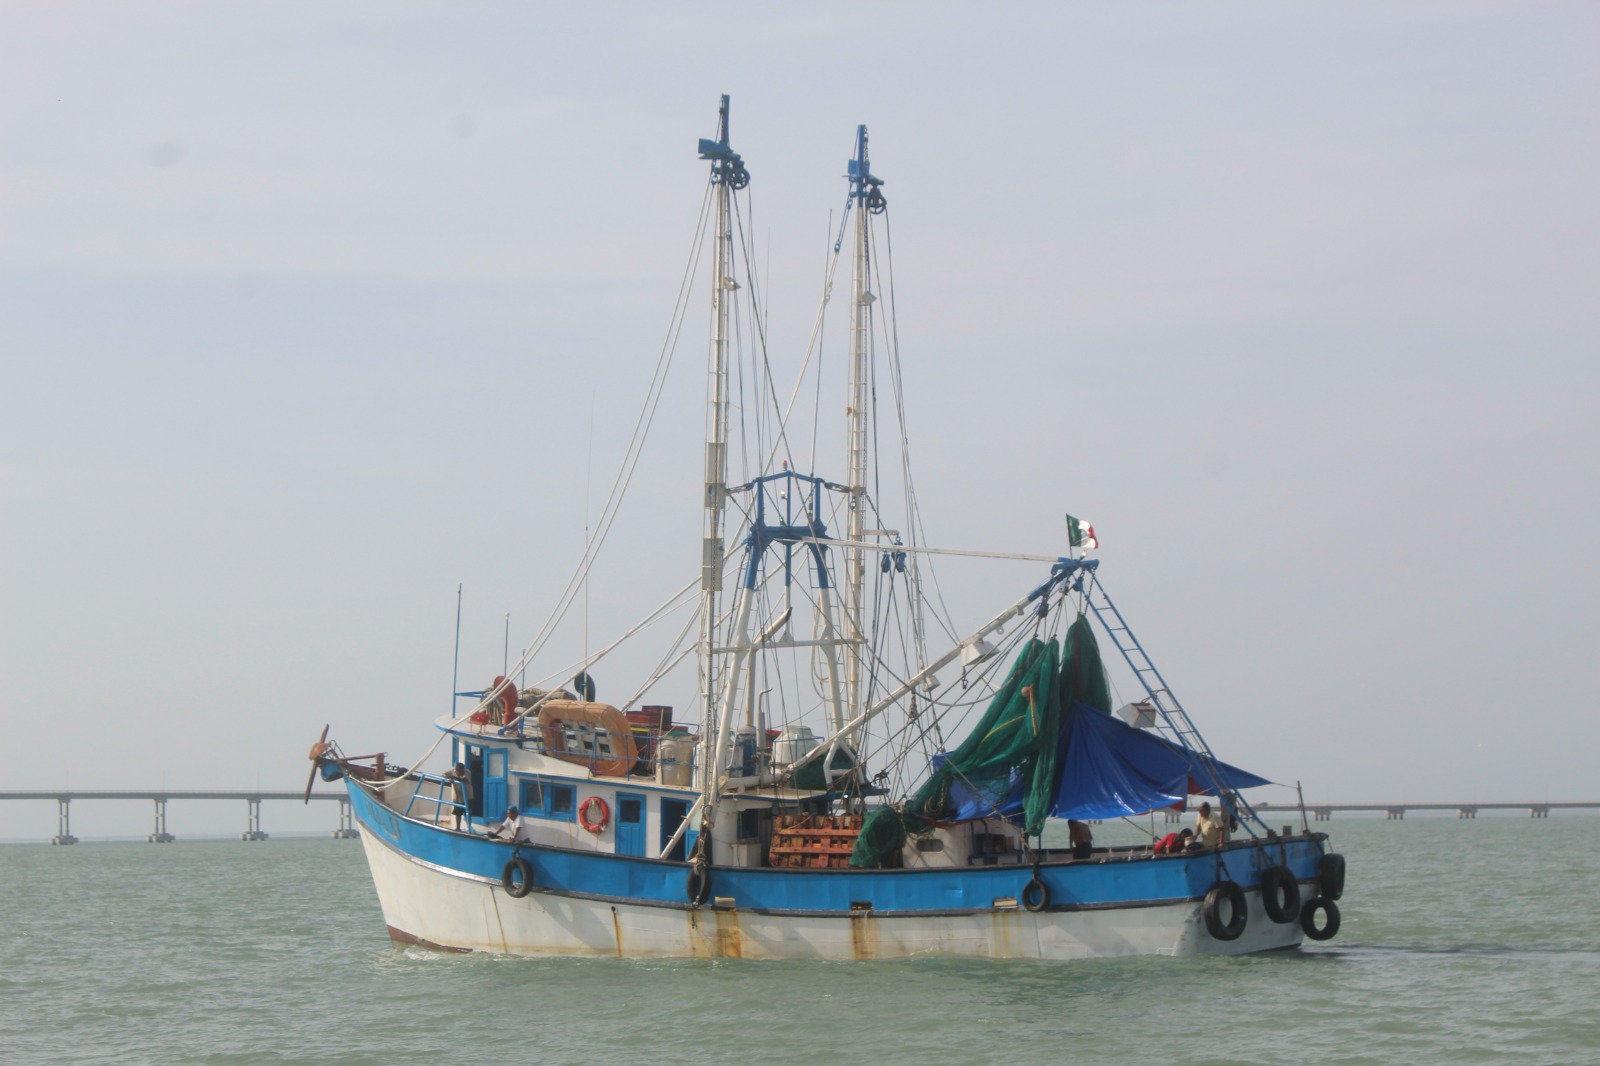 Preocupa a pescadores de altura de Ciudad del Carmen la falta de vigilancia en el mar